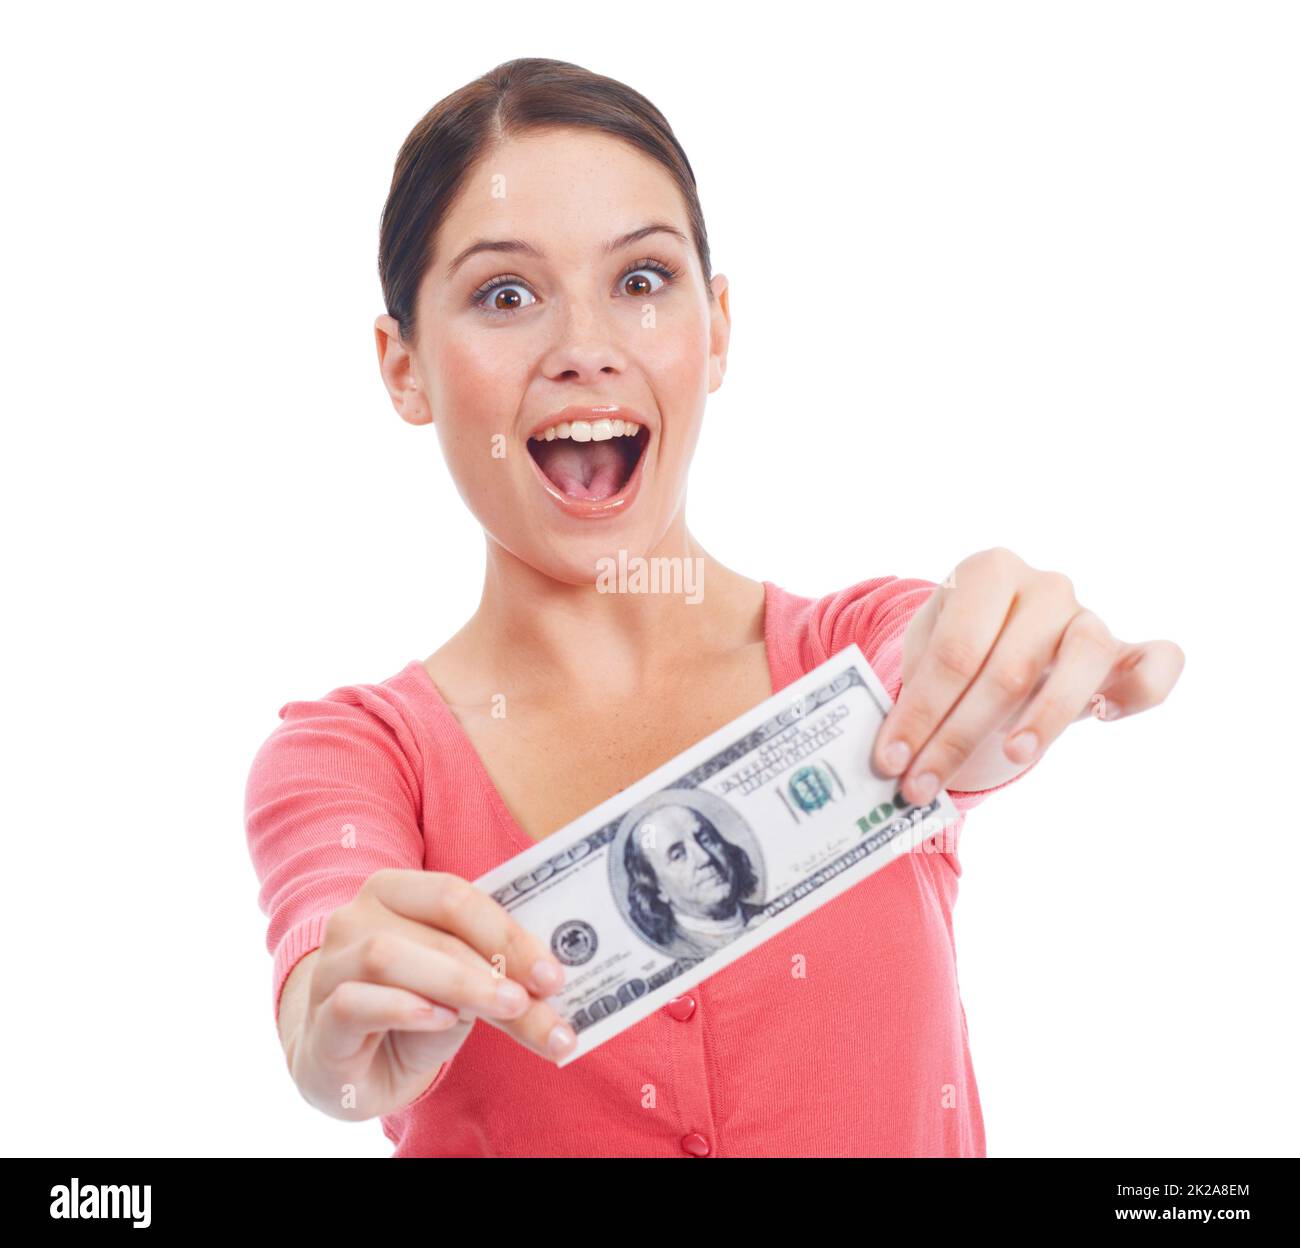 Gewinnen. Aufgeregte junge Frau, die Ihnen eine einzige Geldnote zeigt. Stockfoto